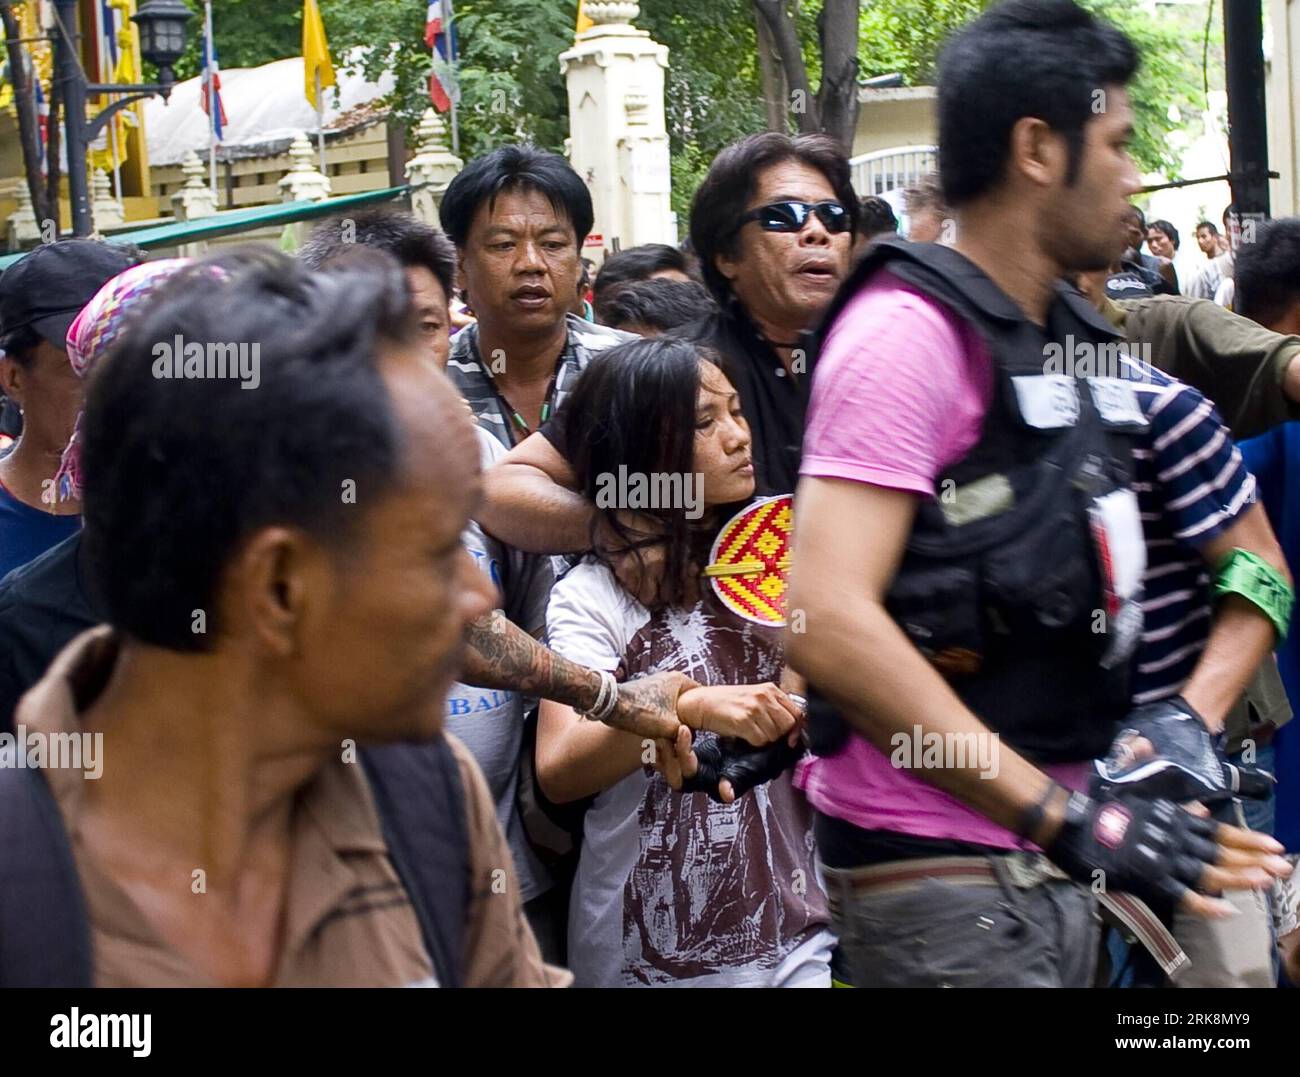 Bildnummer : 54057181 Datum : 18.05.2010 Copyright : imago/Xinhua (100518) -- BANGKOK, 18 mai 2010 (Xinhua) -- Nice Pojanametbalsatit (C), une journaliste thaïlandaise pour France 24 TV, est emmenée par les gardes du temple Pathumwanaram à Bangkok, capitale de la Thaïlande, le 18 mai 2010. Nice a été attaquée alors qu’elle interviewait une femme à l’intérieur du temple mardi midi, selon les médias locaux. Au cours de l'interview, certains manifestants ont crié que la journaliste et son équipe de télévision organisaient l'interview pour discréditer les manifestants. (Xinhua/Chen Duo)(yy) (2)THAILAND-BANGKOK-FEMALE Banque D'Images